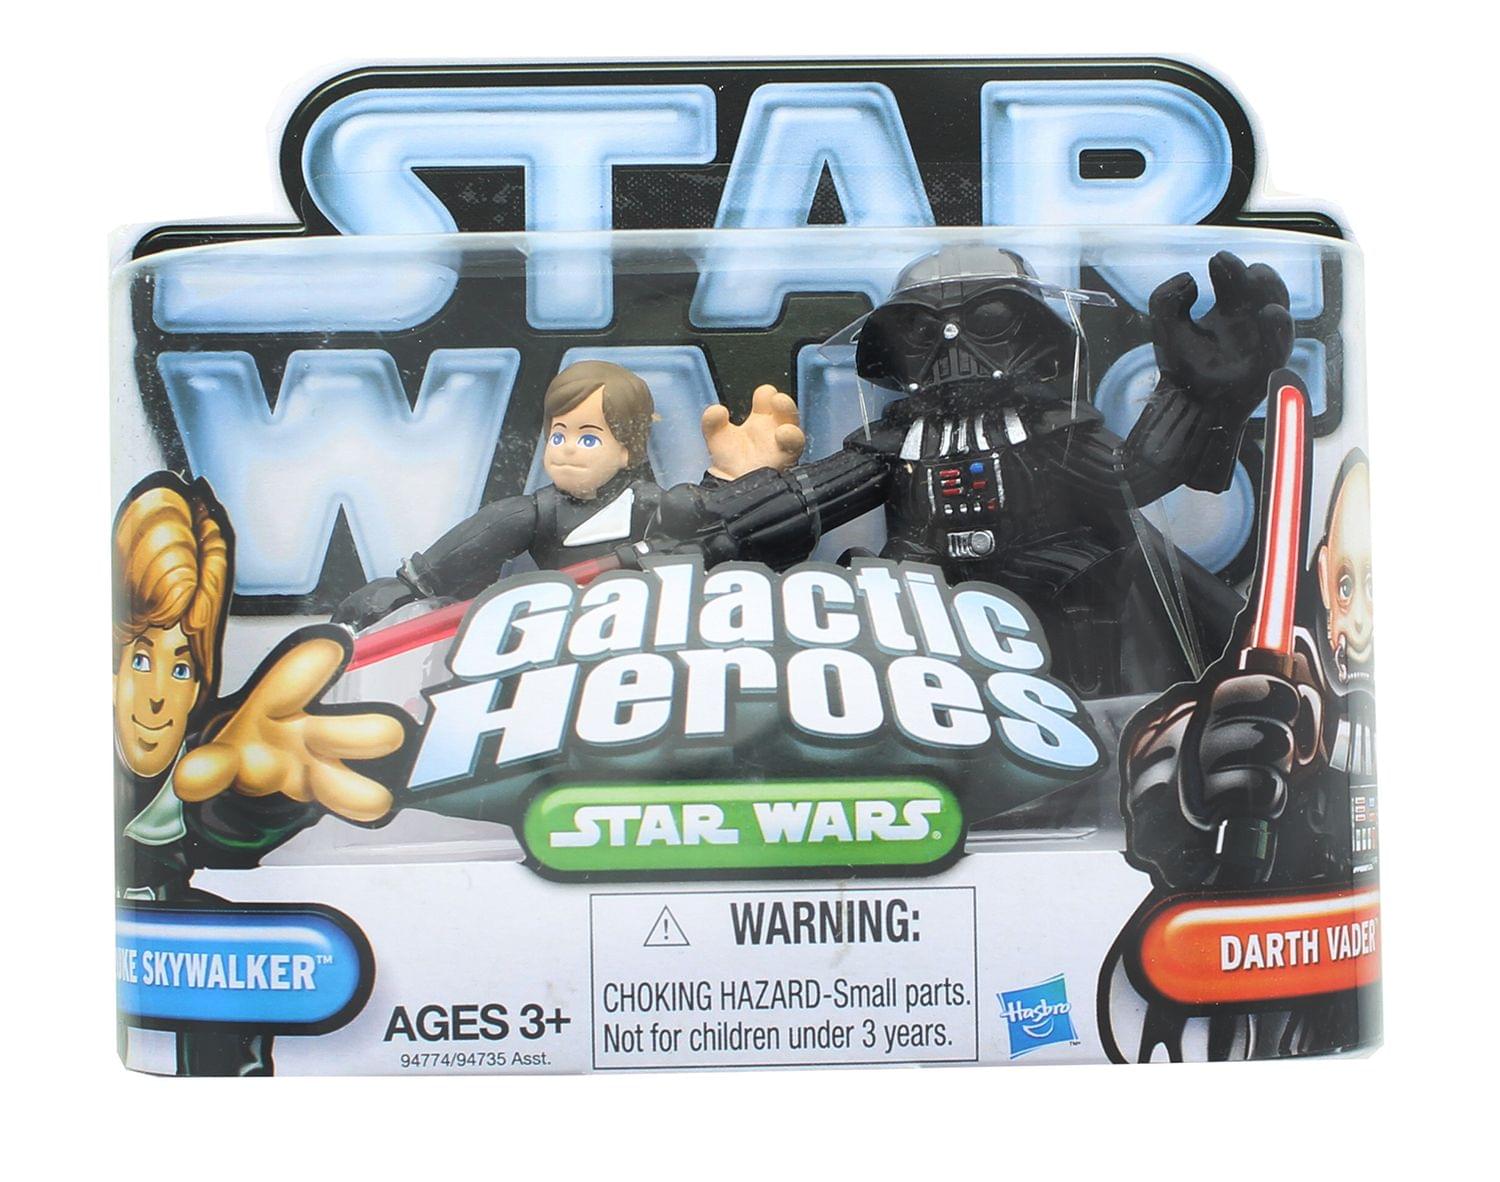 Star Wars Galactic Heroes Mini Figure 2 Pack - Luke Skywalker & Darth Vader